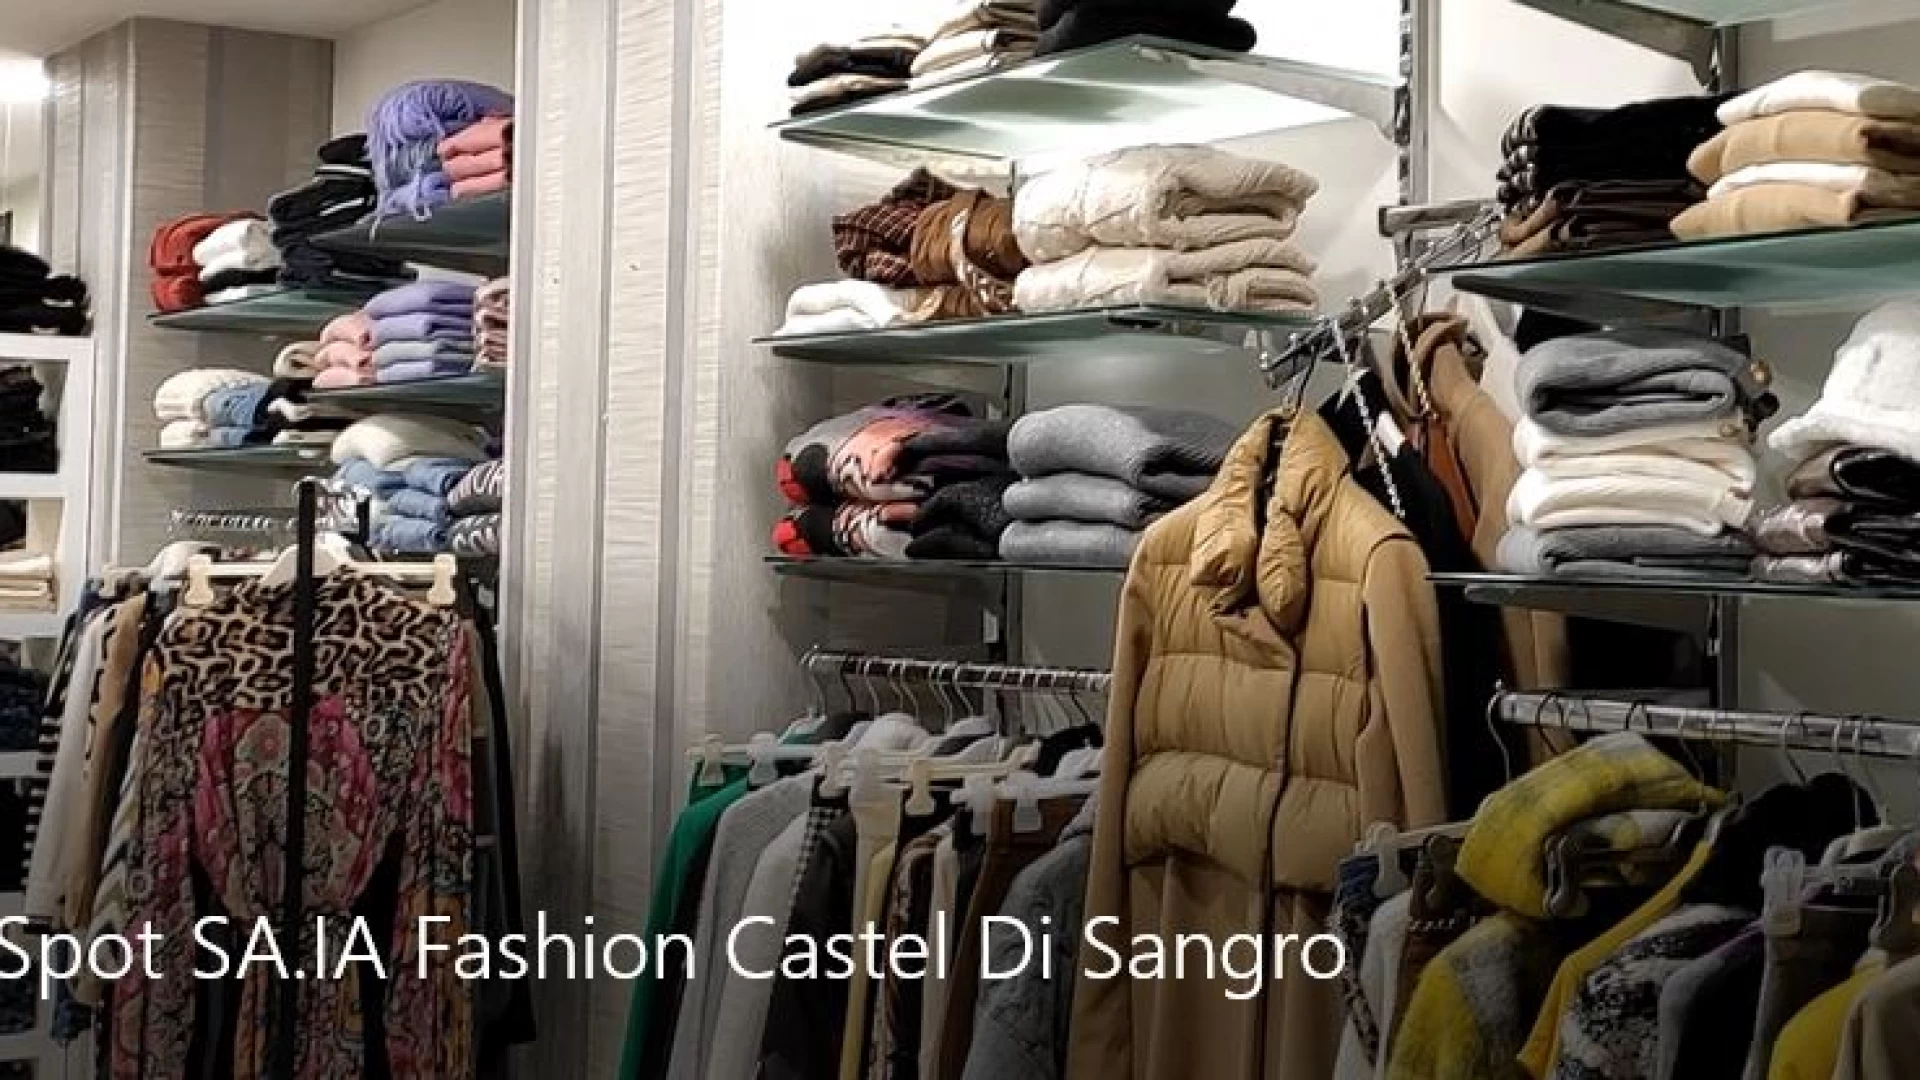 Castel Di Sangro: SA.IA. Fashion è moda. Al via una stagione invernale con numerose novità. Guarda lo spot